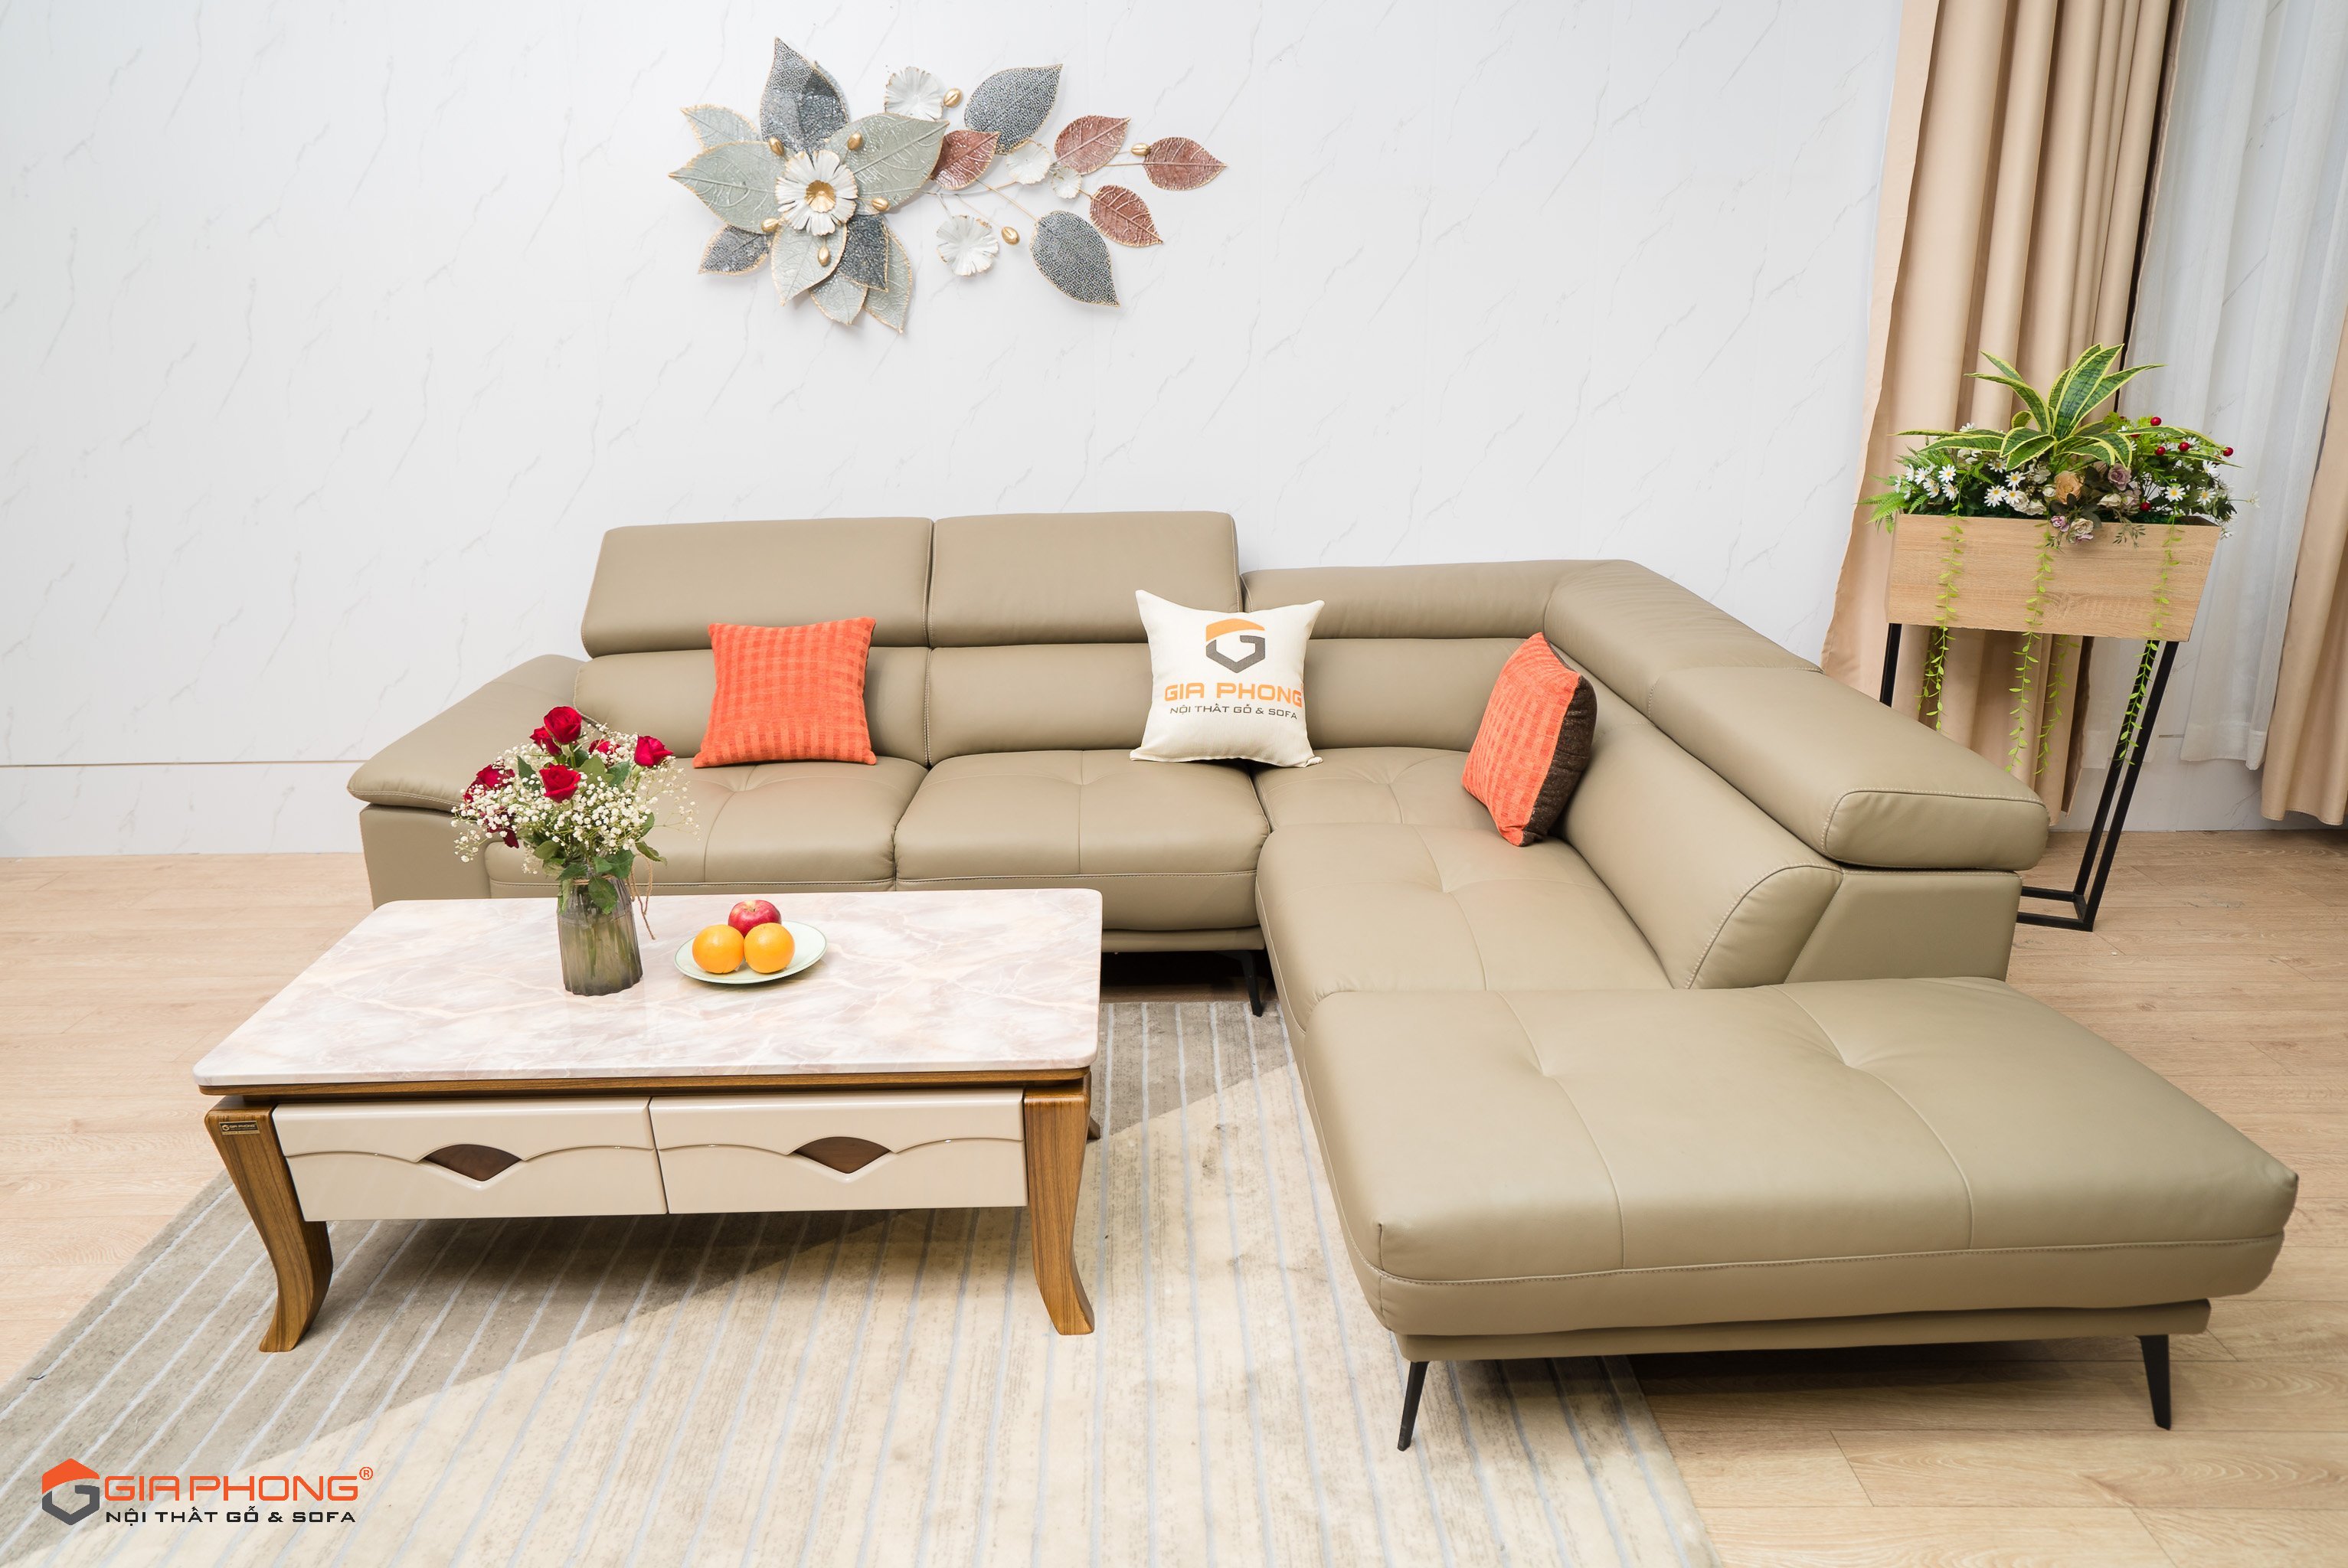 Các sofá gỗ Đà Nẵng được nâng cấp đáng kể vào năm 2024 với thiết kế đột phá và chất lượng tốt hơn. Chúng có thể làm cho căn phòng của bạn trở nên ấm áp và sang trọng hơn. Với các tùy chọn màu sắc và chất liệu đa dạng, bạn sẽ dễ dàng tìm thấy sản phẩm phù hợp nhất cho không gian của mình. Hãy chọn sofá gỗ Đà Nẵng để mang lại sự thoải mái và hiện đại cho không gian sống của bạn.